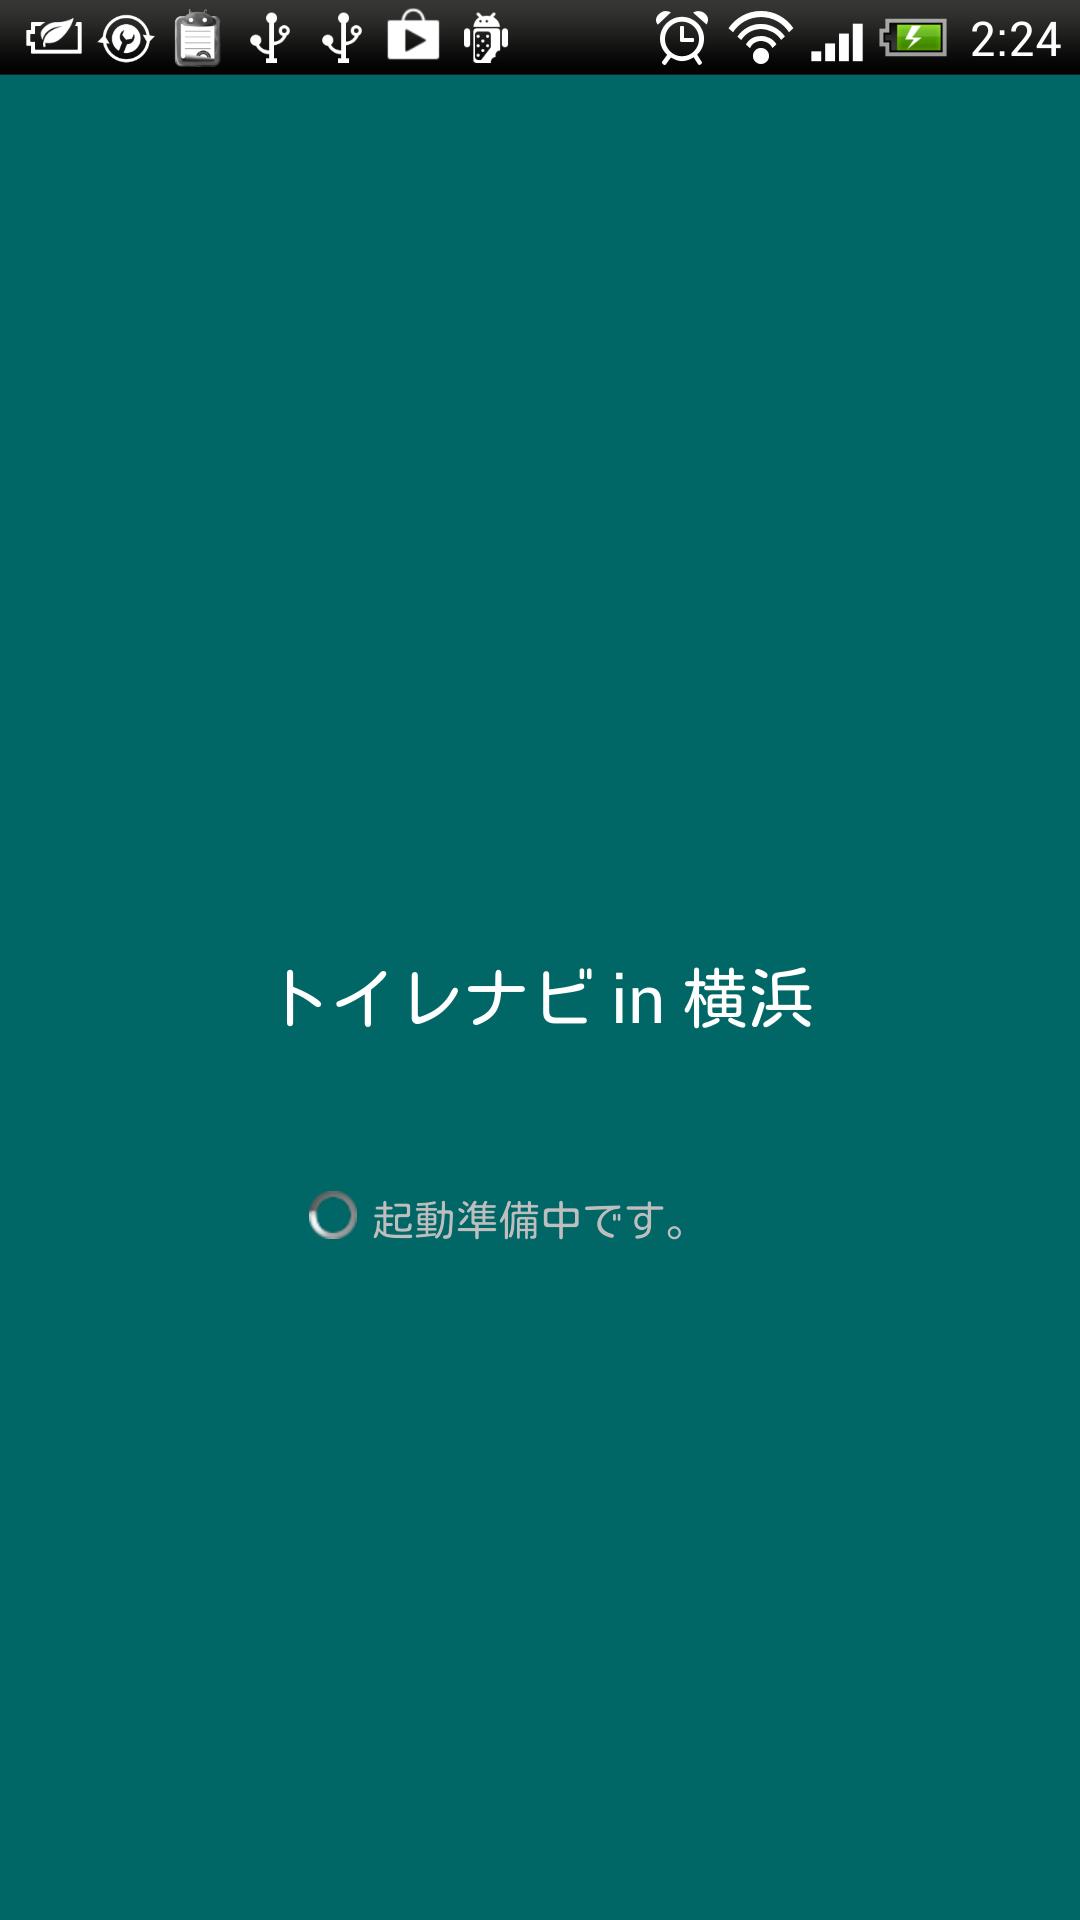 トイレナビ In 横浜 公衆トイレ検索アプリ For Android Apk Download